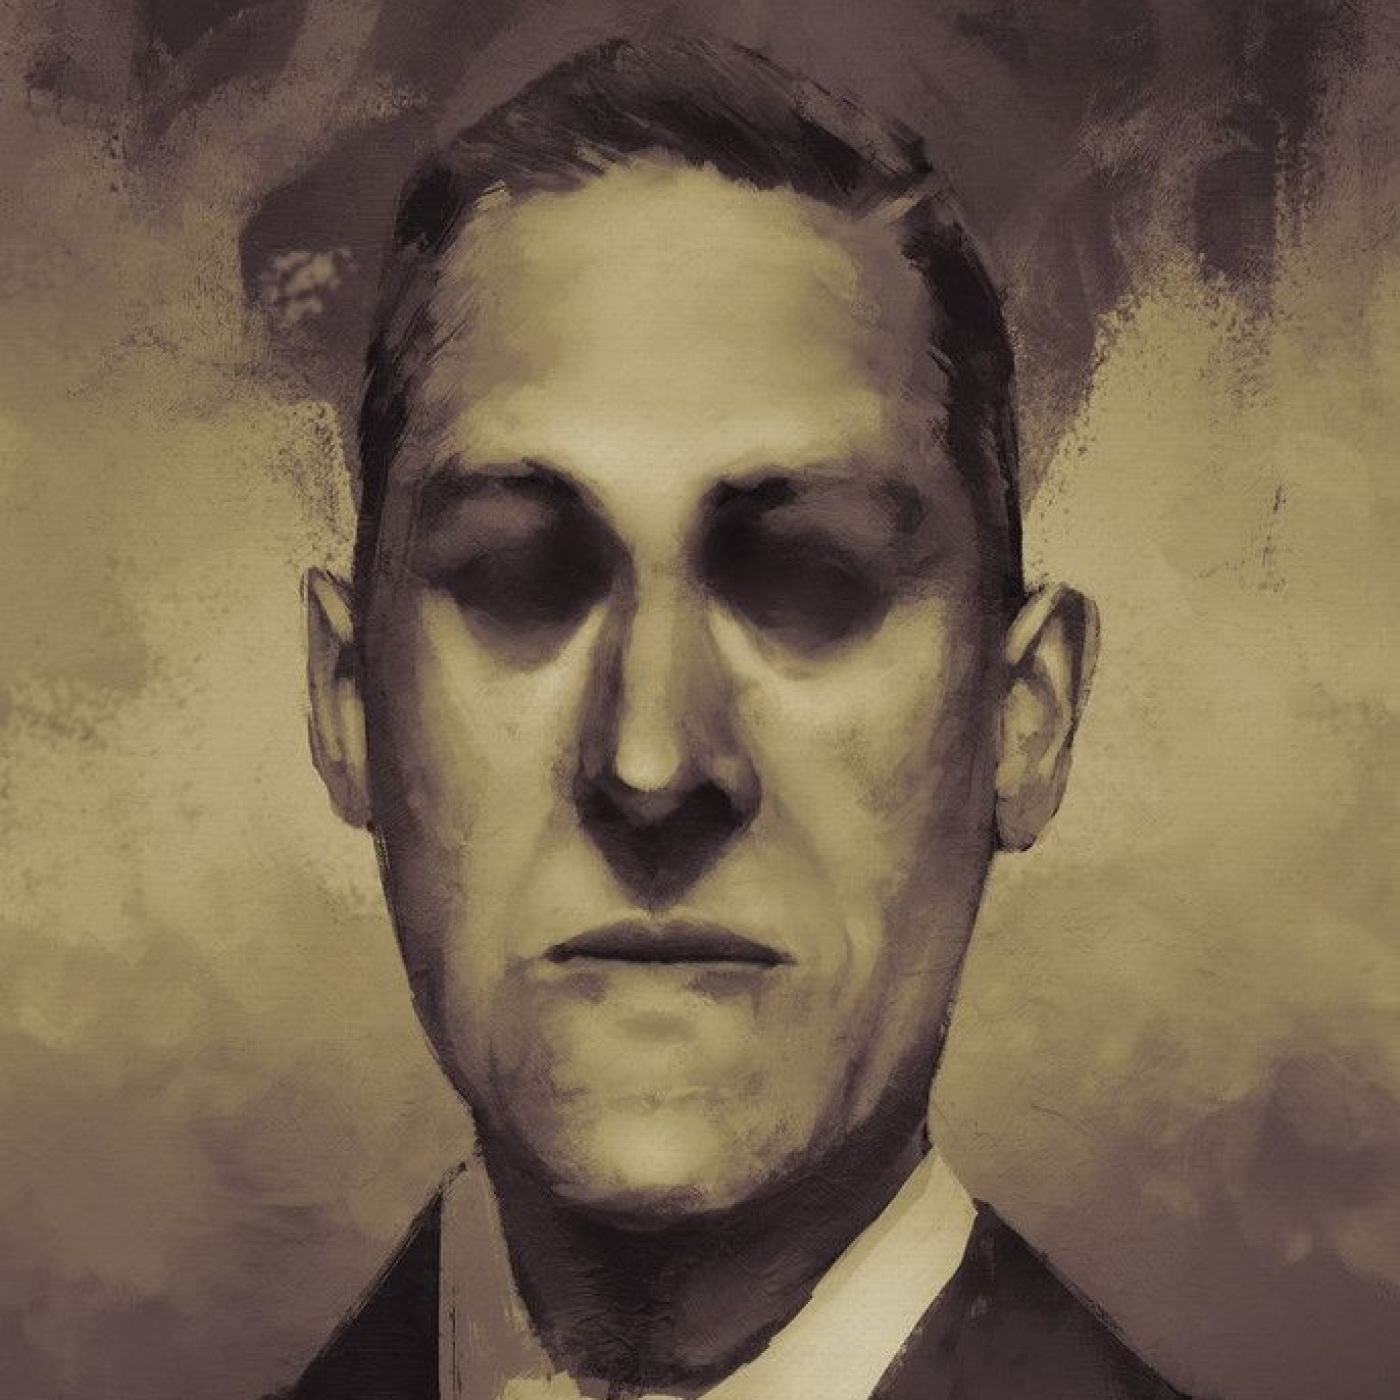 ”El Templo”, de H.P. Lovecraft (Nueva versión) - Episodio exclusivo para mecenas